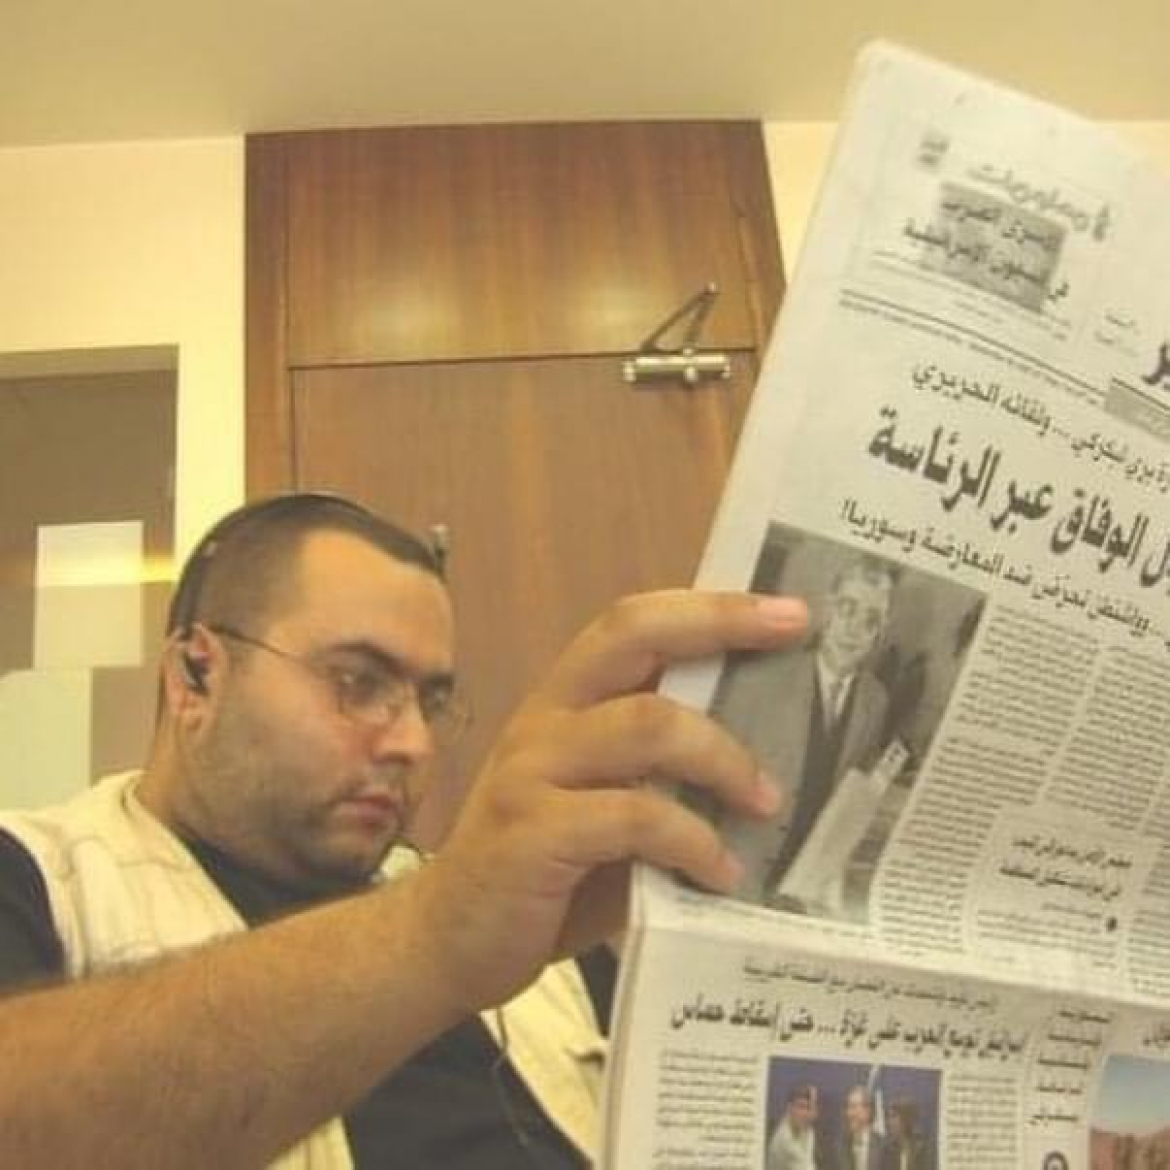 مجلّة "النداء" تنعي مسؤول تحريرها السابق الصحافي وسام متّى